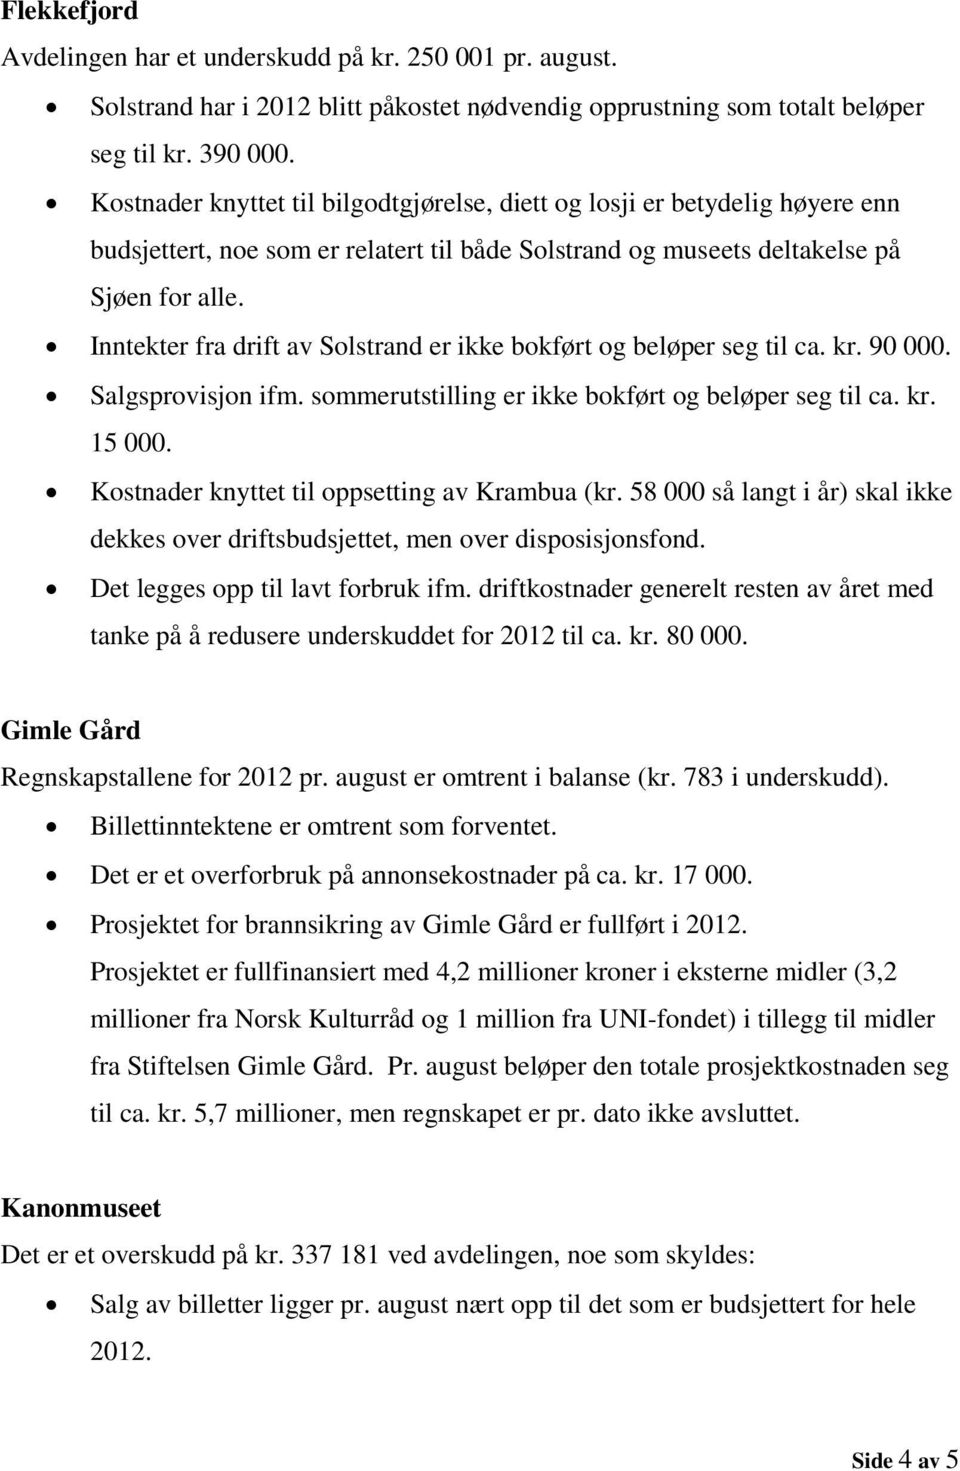 Inntekter fra drift av Solstrand er ikke bokført og beløper seg til ca. kr. 90 000. Salgsprovisjon ifm. sommerutstilling er ikke bokført og beløper seg til ca. kr. 15 000.